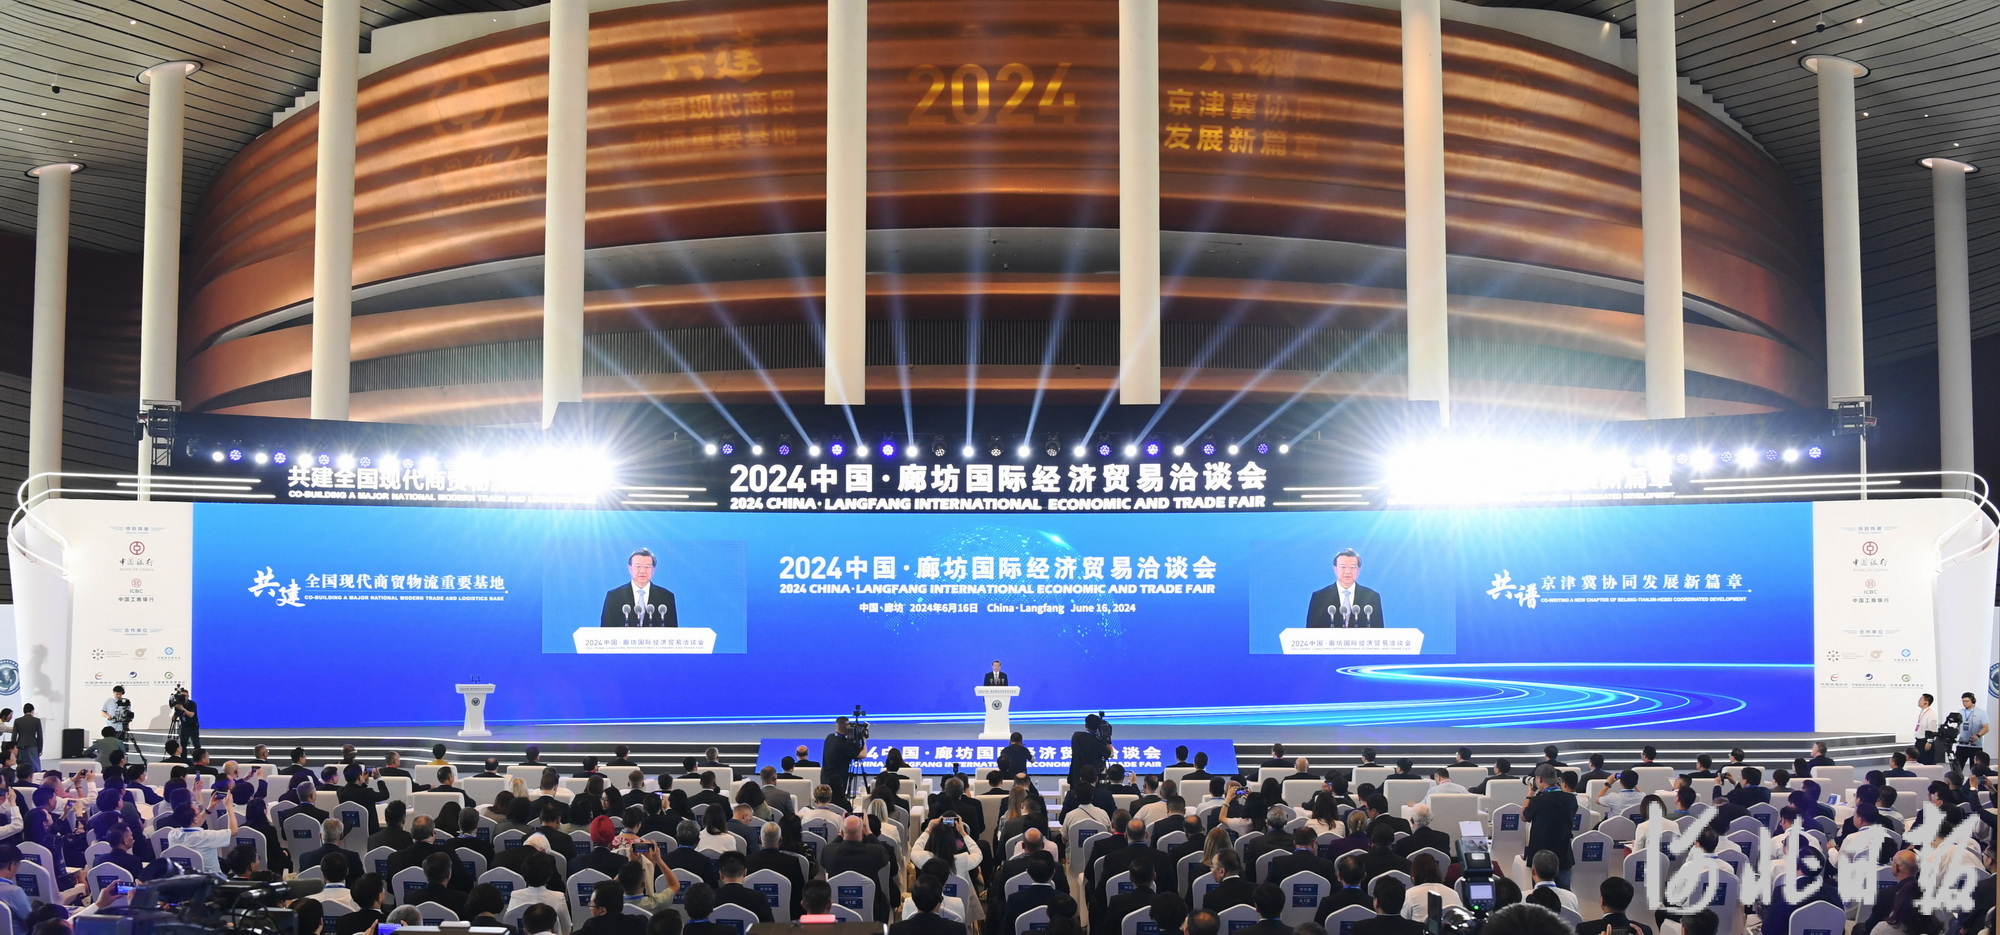 2024中国·廊坊国际经济贸易洽谈会开幕